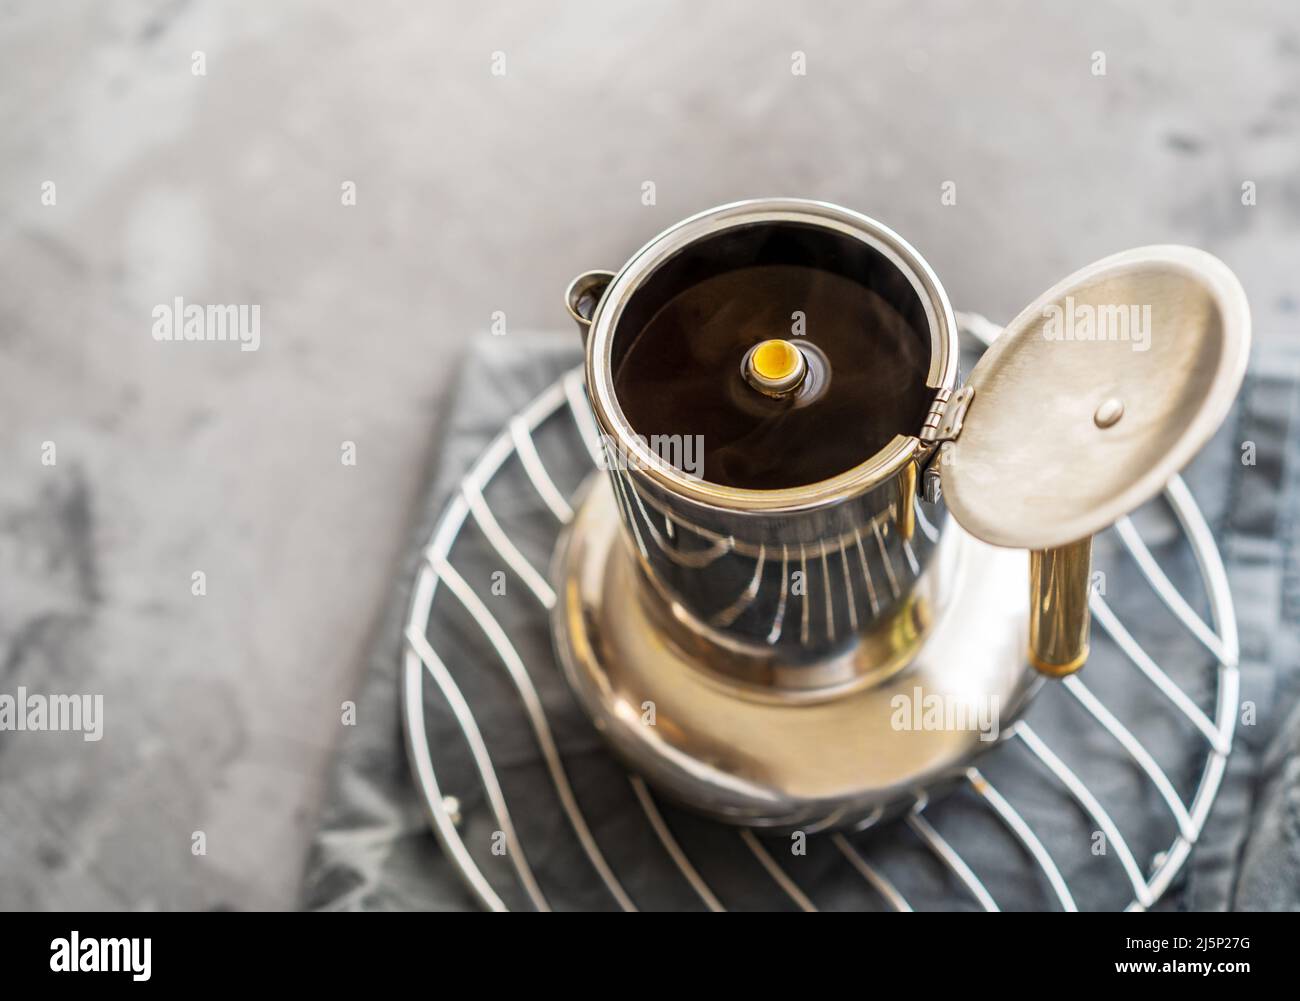 Frisch gebrühter Kaffee in Kaffeekocher auf grauem Hintergrund Stockfoto